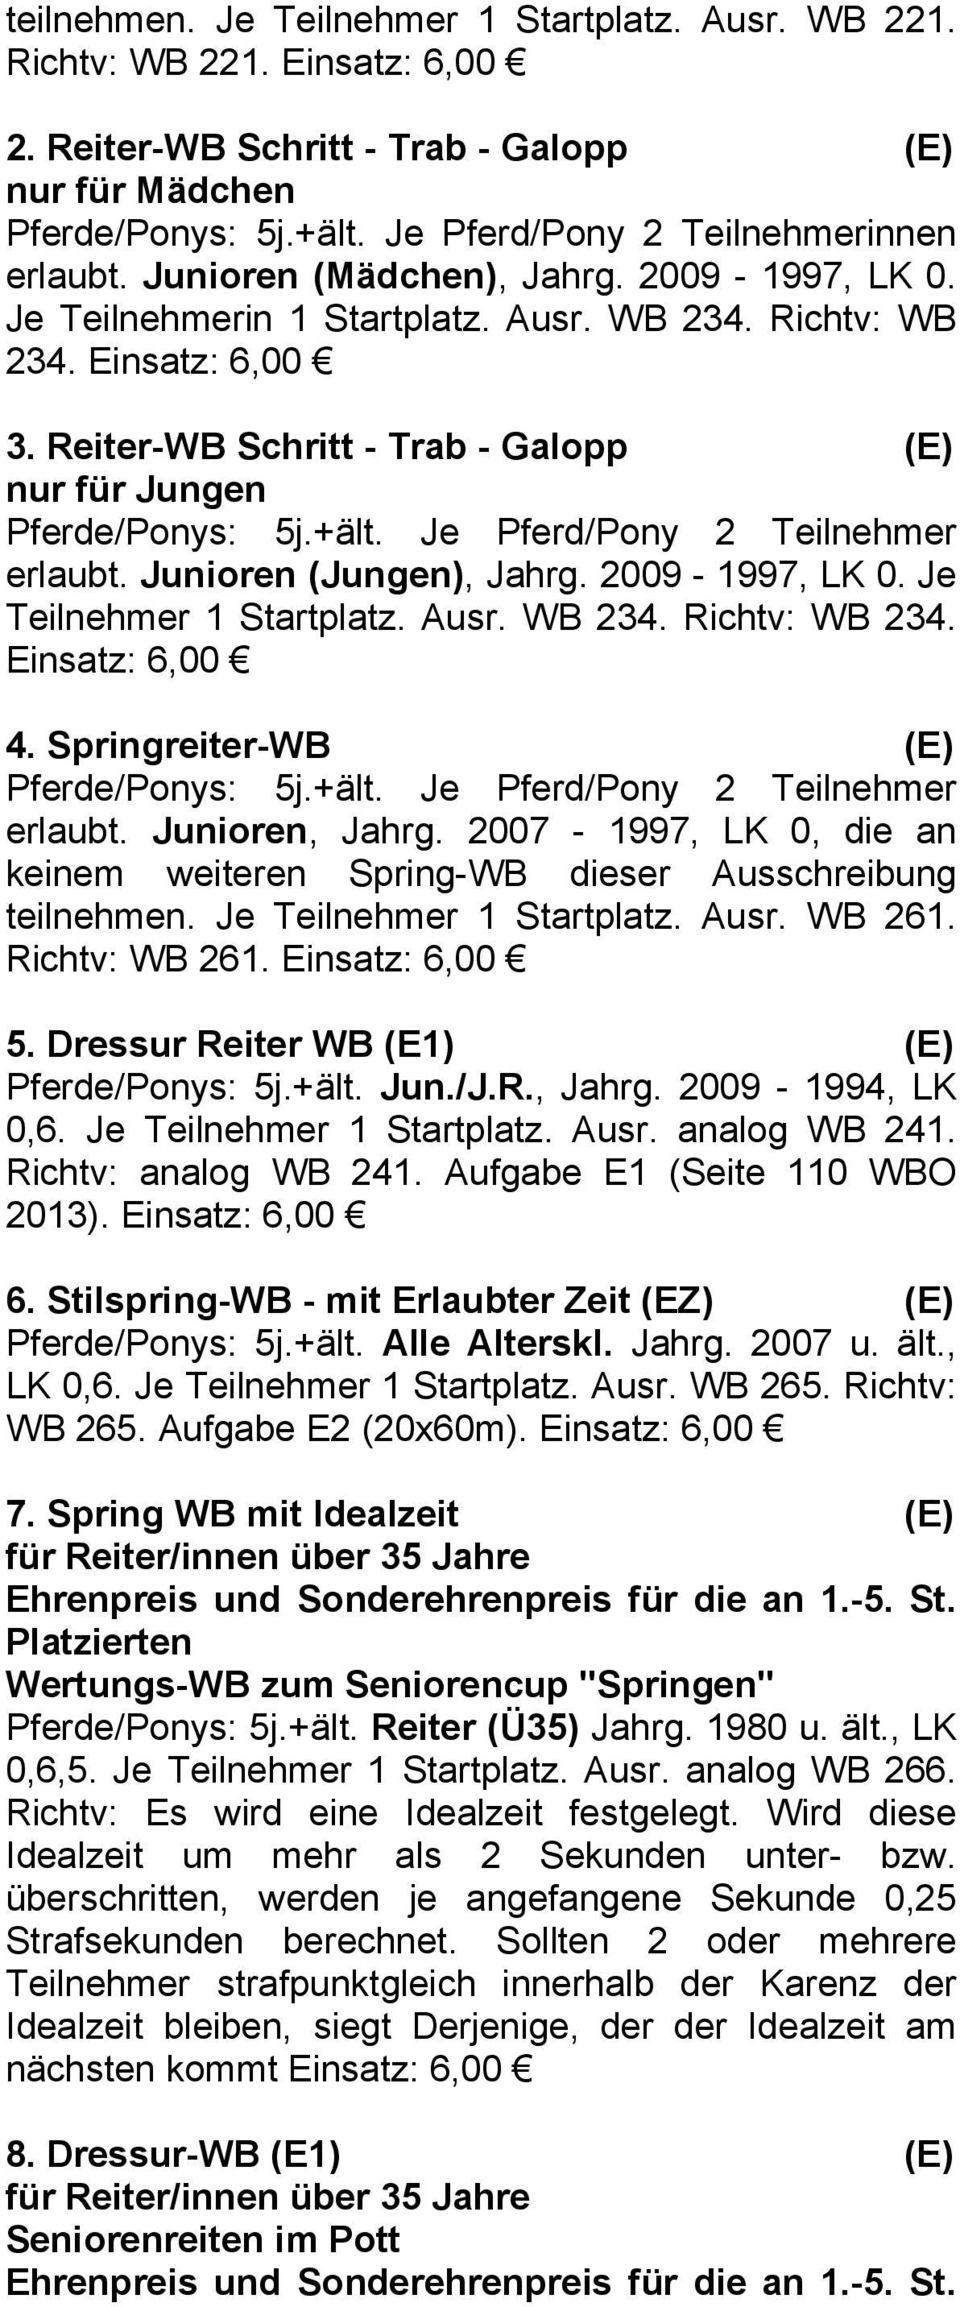 Reiter-WB Schritt - Trab - Galopp (E) nur für Jungen Pferde/Ponys: 5j.+ält. Je Pferd/Pony 2 Teilnehmer erlaubt. Junioren (Jungen), Jahrg. 2009-1997, LK 0. Je Teilnehmer 1 Startplatz. Ausr. WB 234.